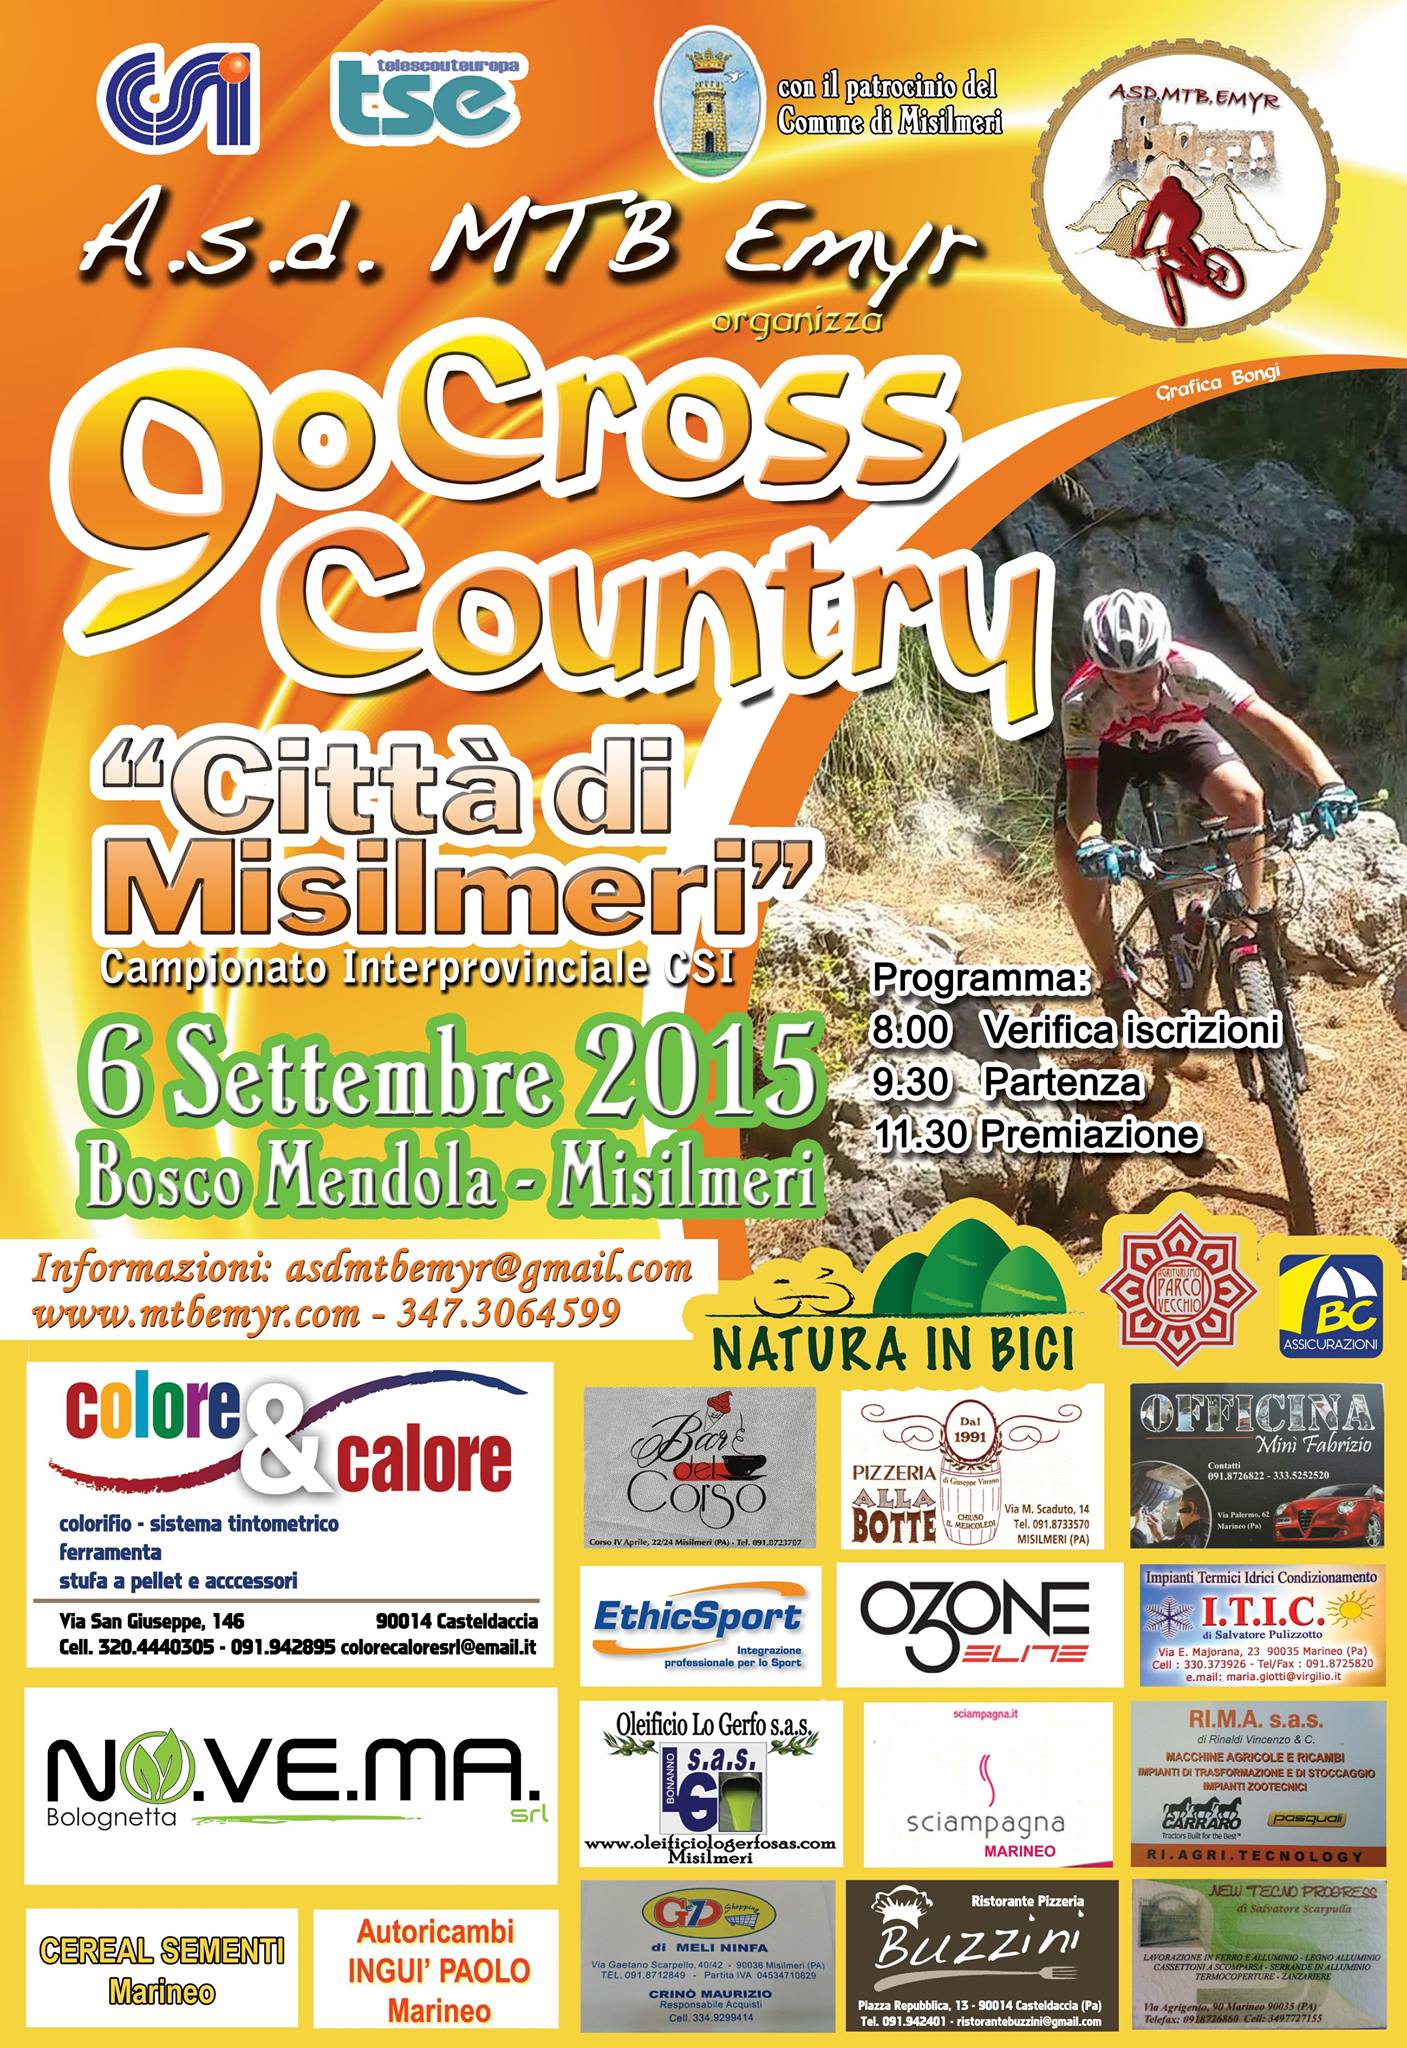 Domenica 6 Settembre, il 9° Cross Country in mountainbike